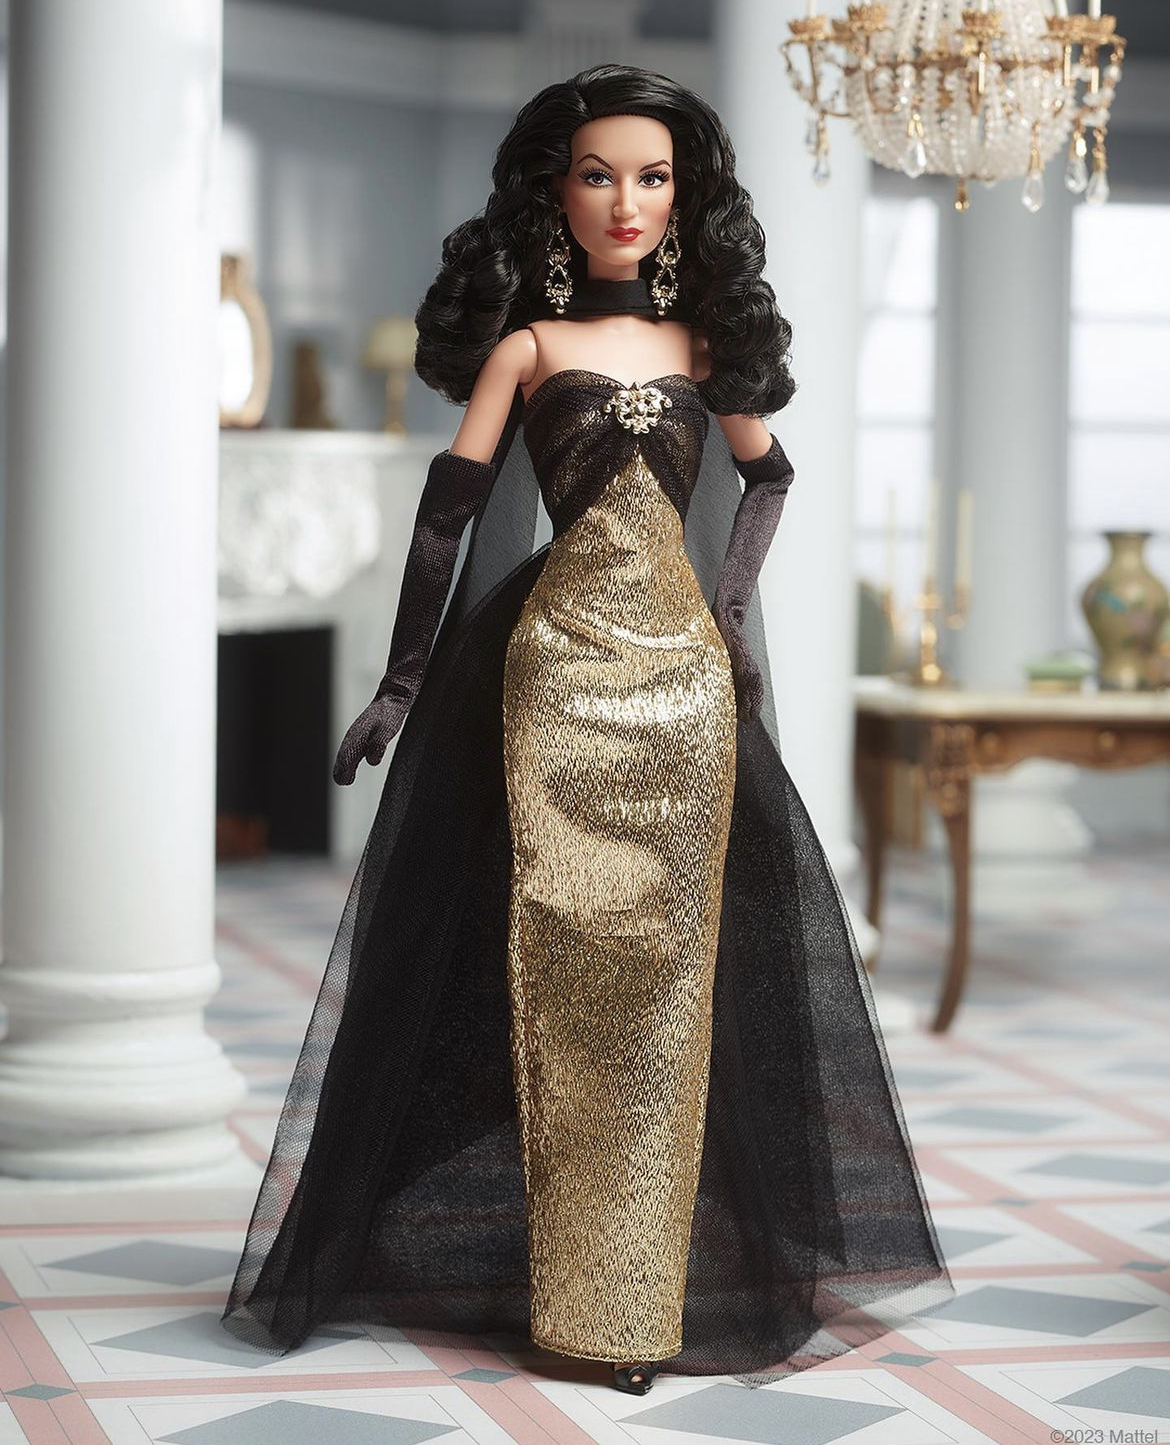 Maria Felix Icono del Glamour y la Belleza del Cine Mexicano Dorado, transformada en muñeca Barbie ®